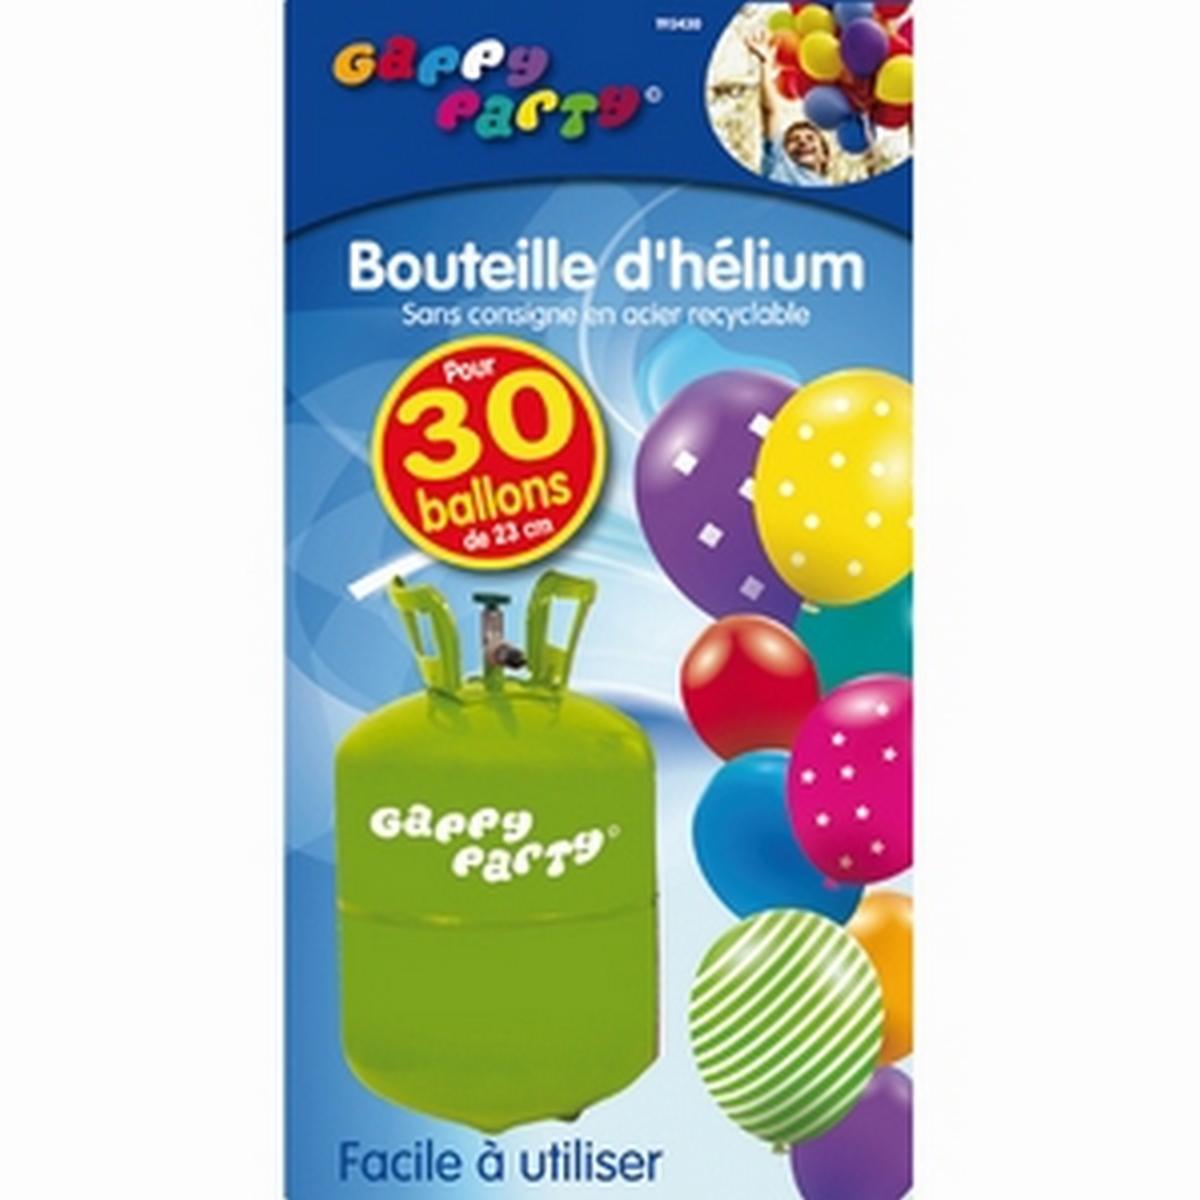 Bouteille d'hélium pour 30 ballons, Commandez facilement en ligne